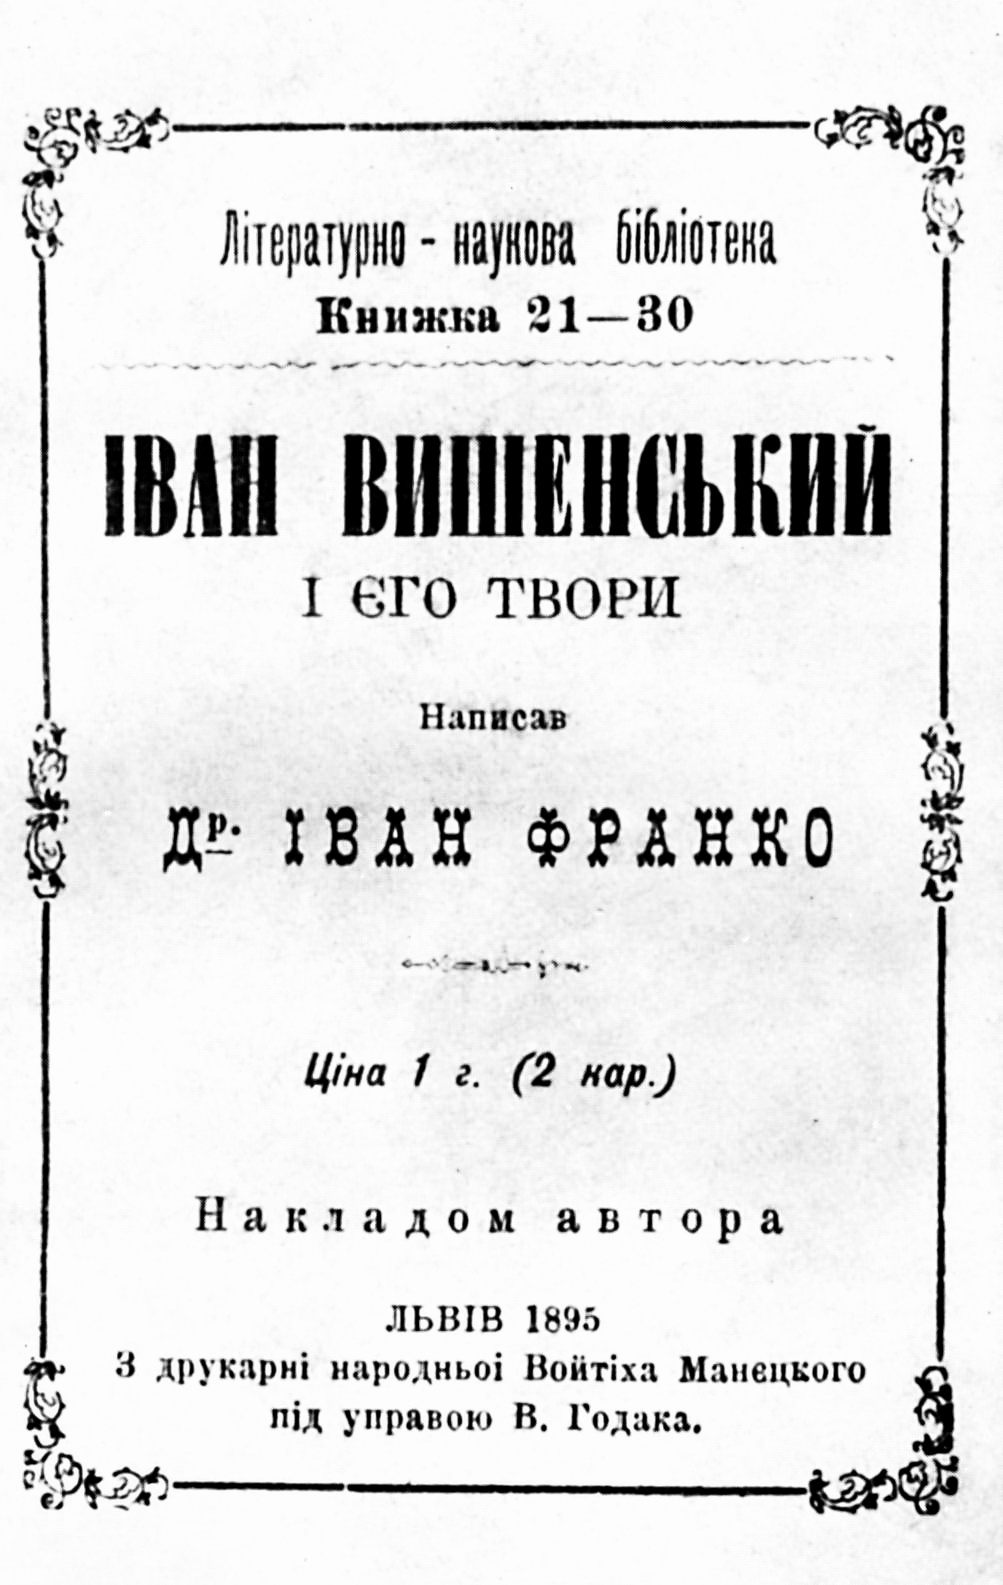 Обкладинка монографії “Іван Вишенський та його твори” Івана Франка, 1895 р.